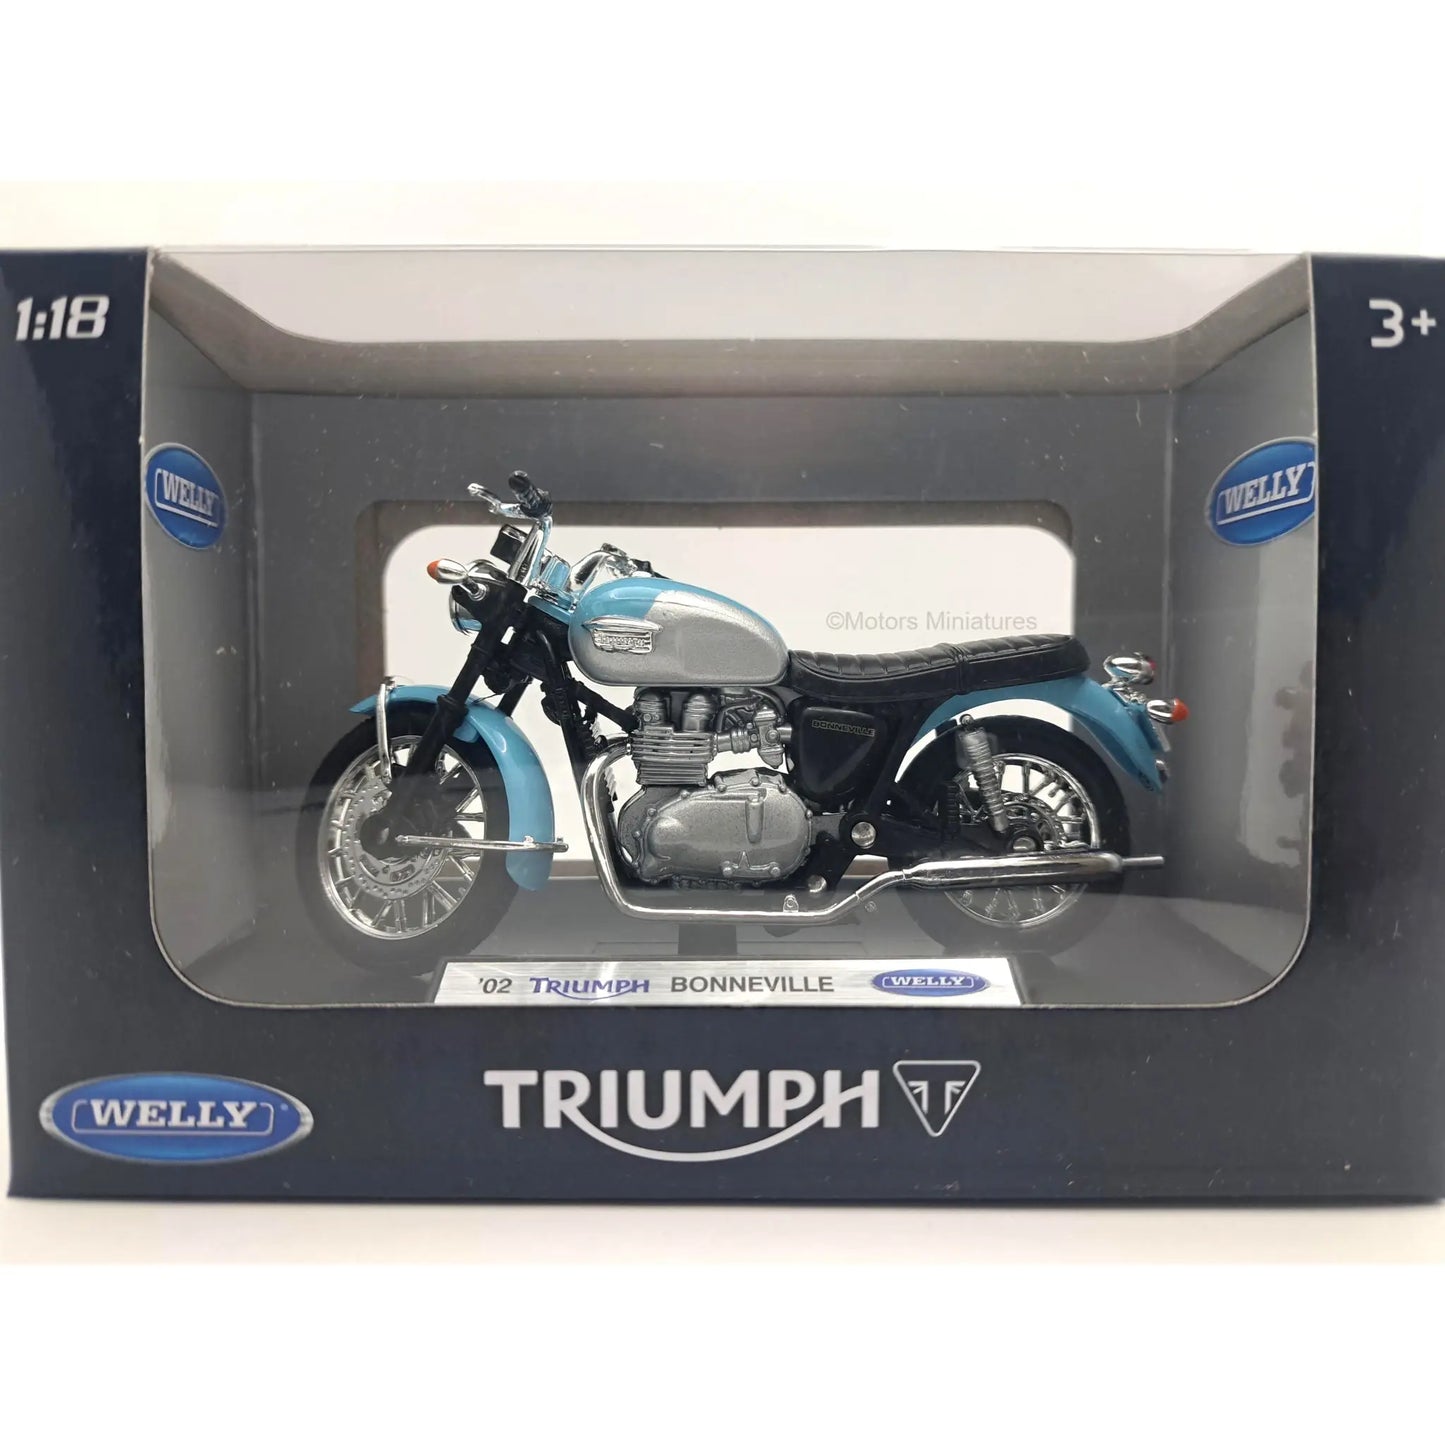 Triumph Bonneville 2002 Welly 1/18 | Motors Miniatures